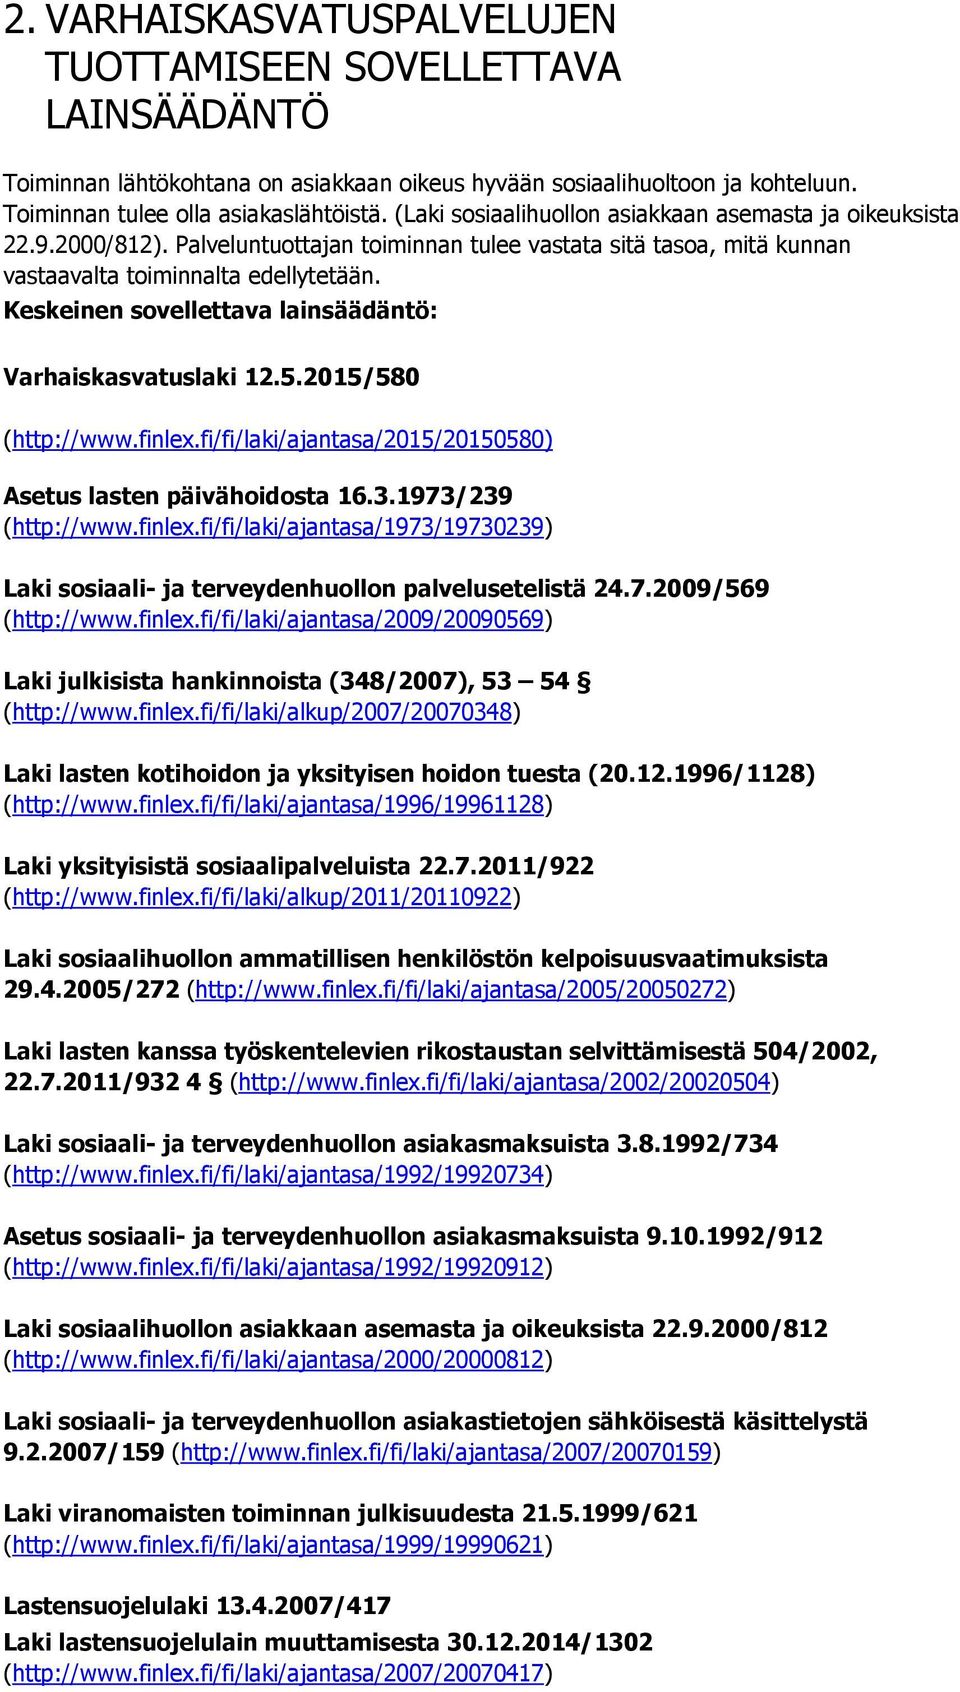 Keskeinen sovellettava lainsäädäntö: Varhaiskasvatuslaki 12.5.2015/580 (http://www.finlex.fi/fi/laki/ajantasa/2015/20150580) Asetus lasten päivähoidosta 16.3.1973/239 (http://www.finlex.fi/fi/laki/ajantasa/1973/19730239) Laki sosiaali- ja terveydenhuollon palvelusetelistä 24.